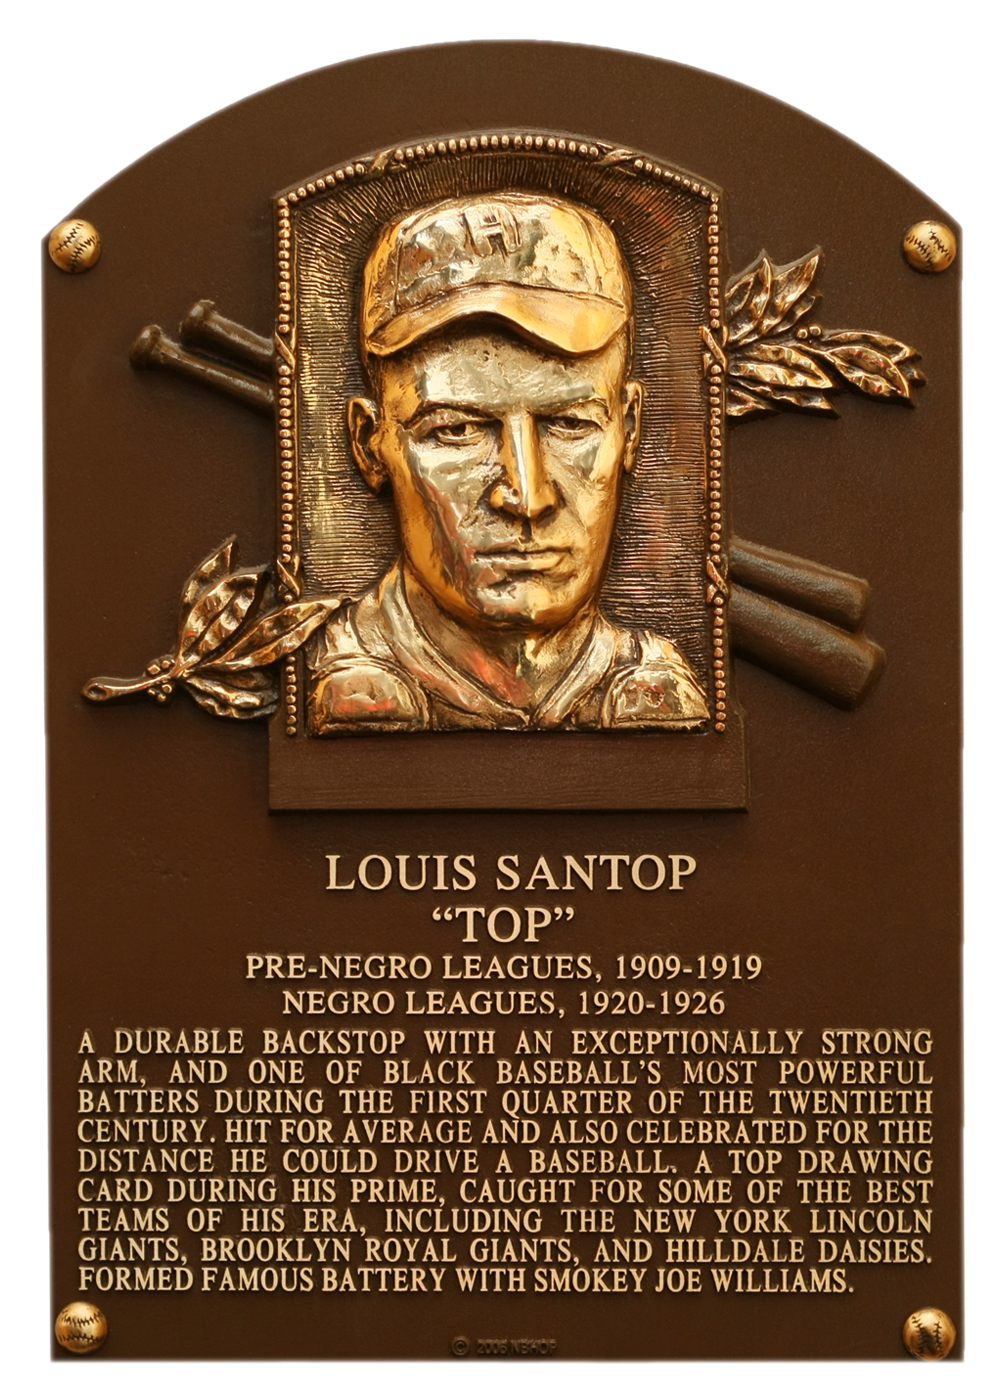 Louis Santop Hall of Fame plaque